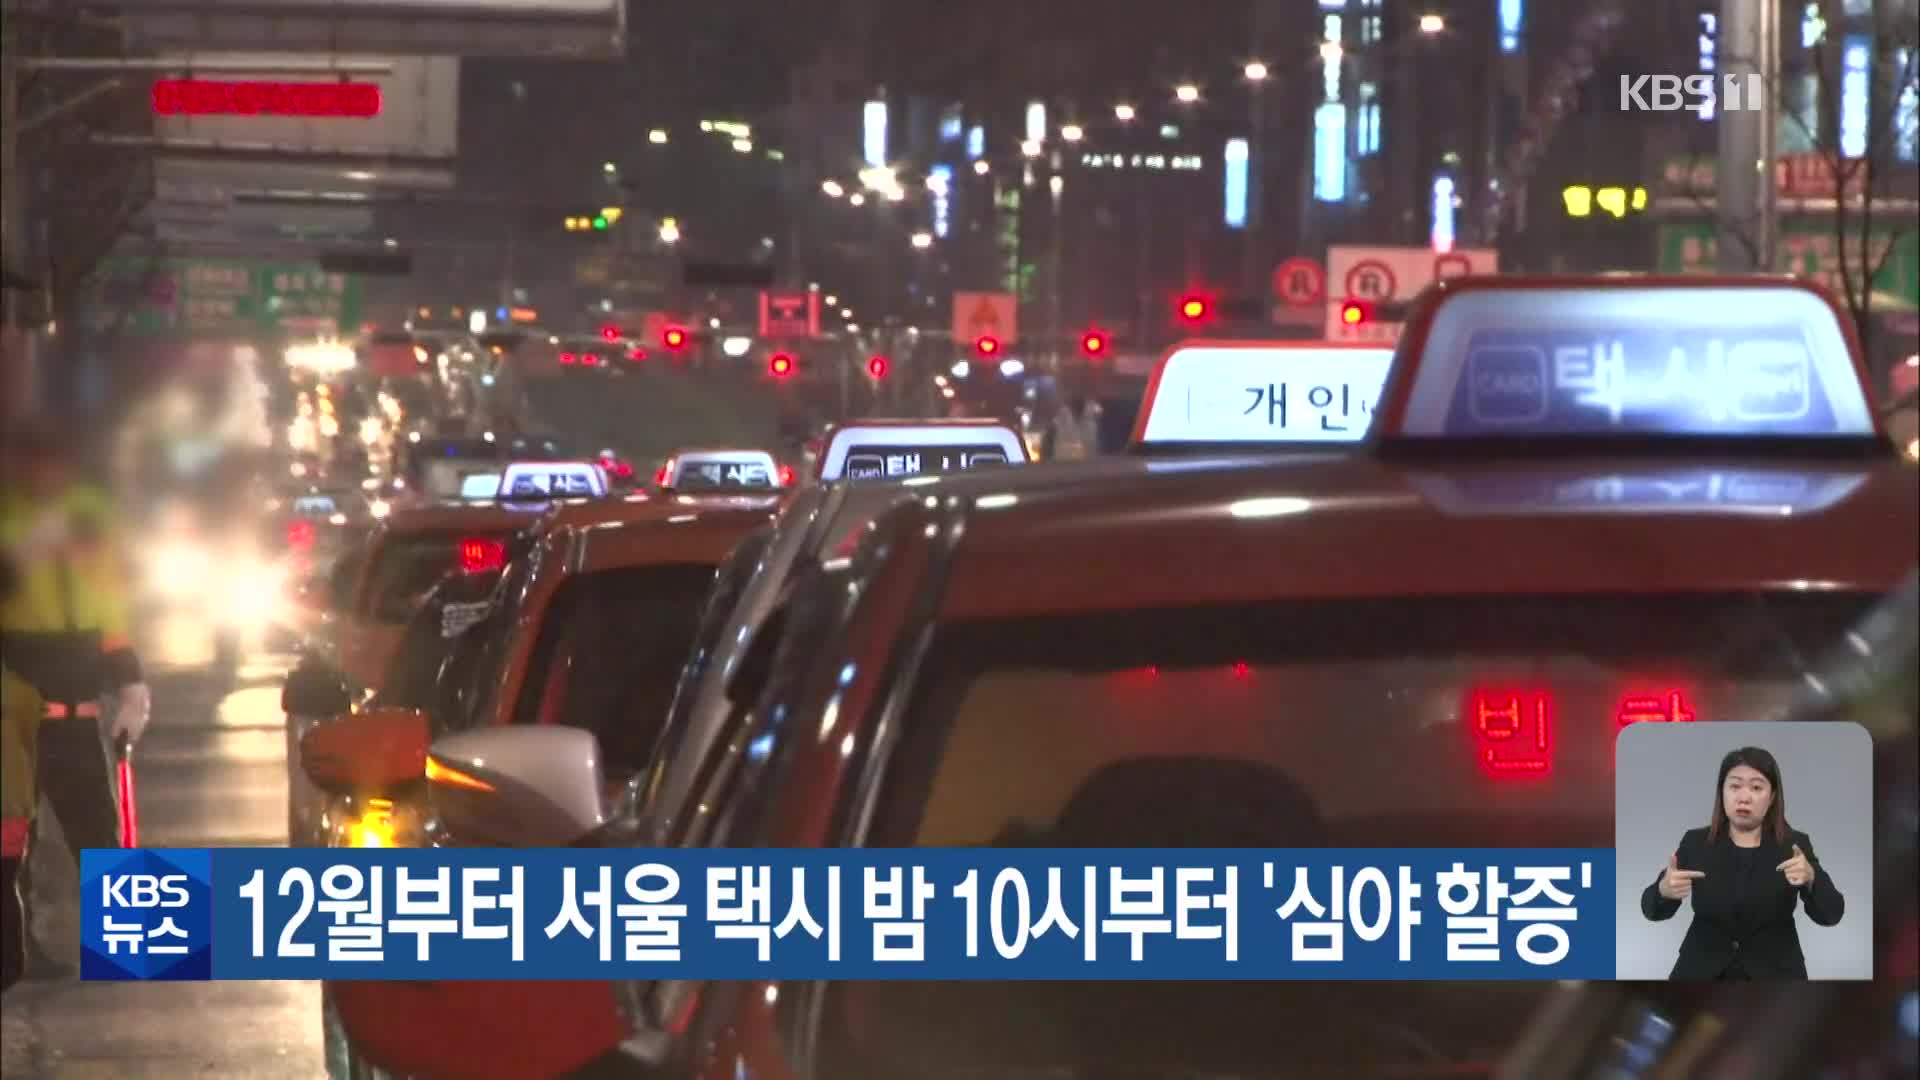 12월부터 서울 택시 밤 10시부터 ‘심야 할증’